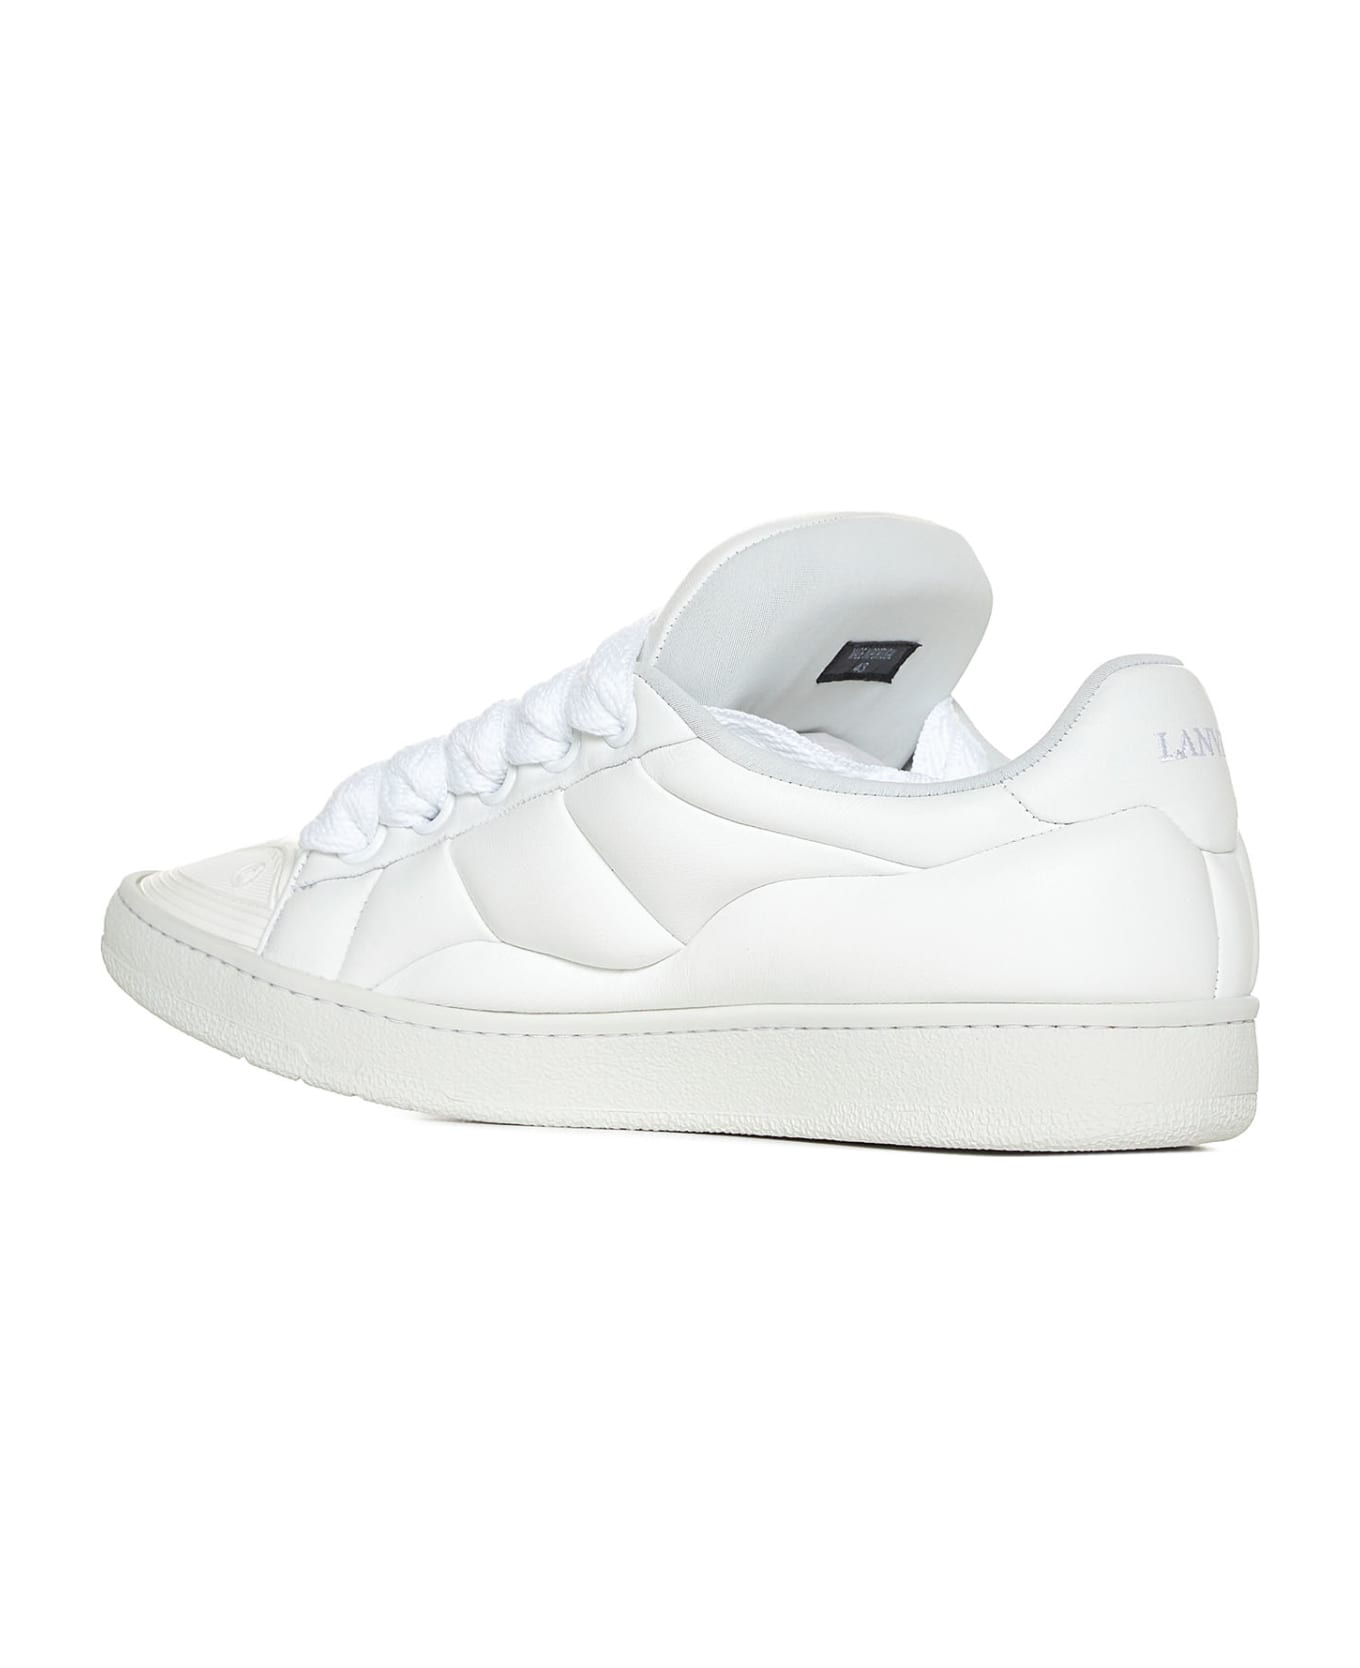 Lanvin Sneakers - White/white スニーカー